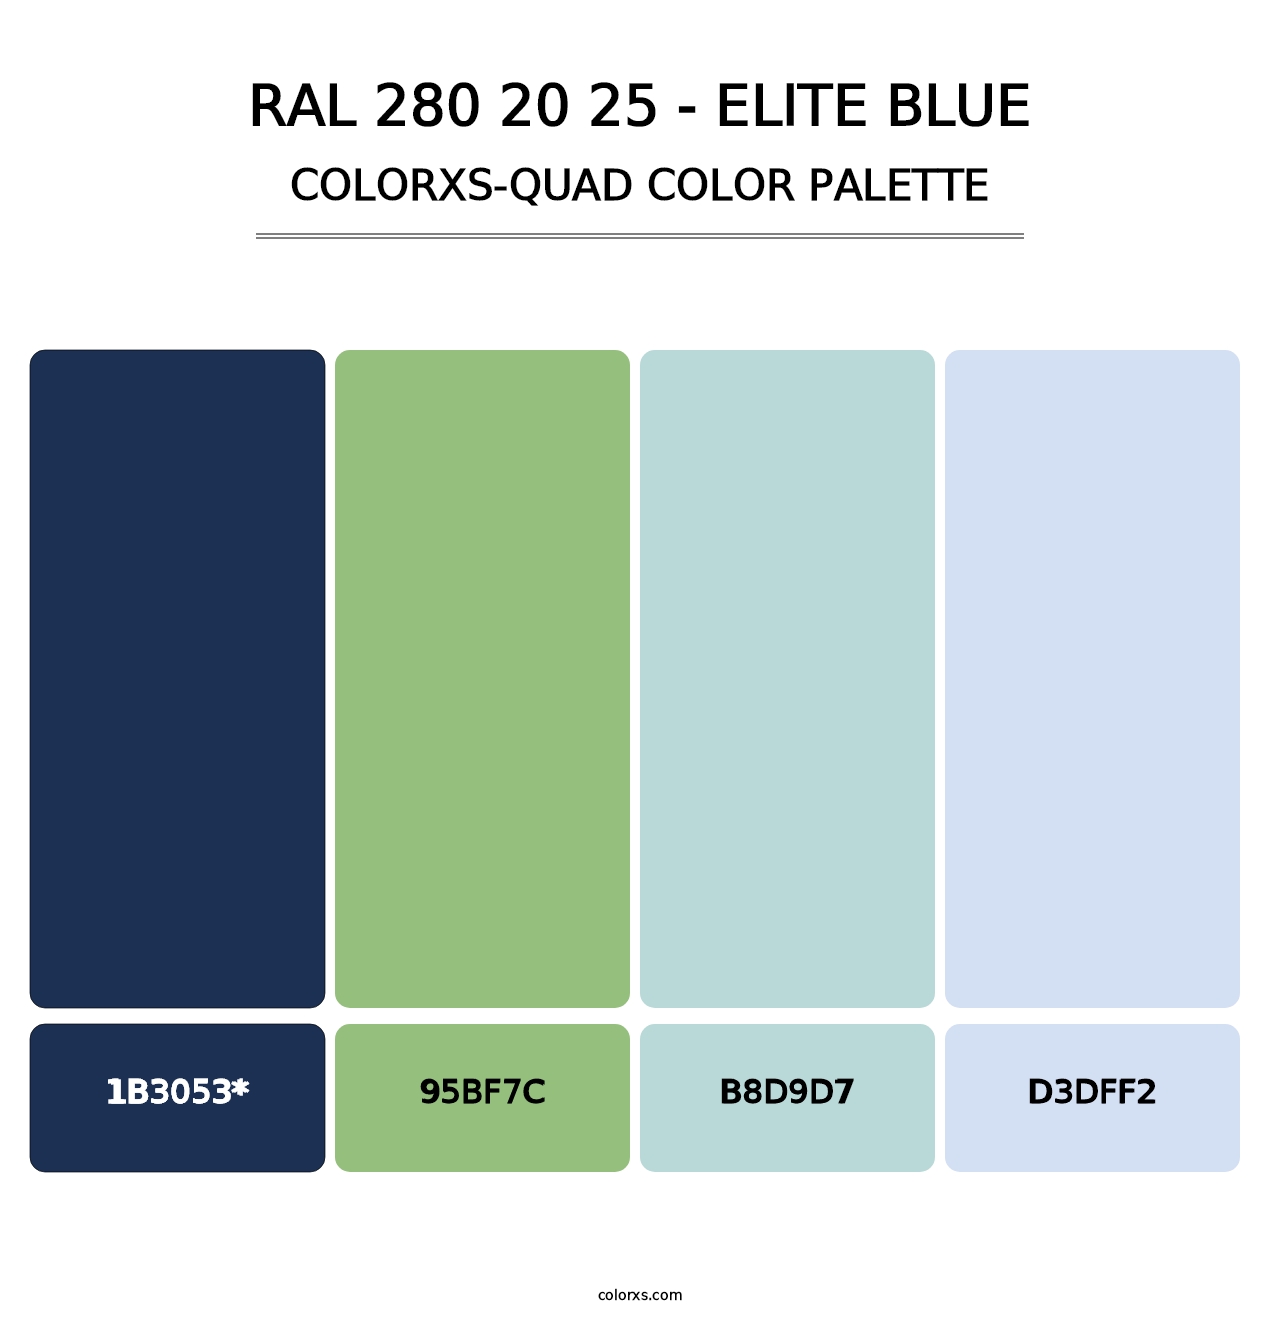 RAL 280 20 25 - Elite Blue - Colorxs Quad Palette